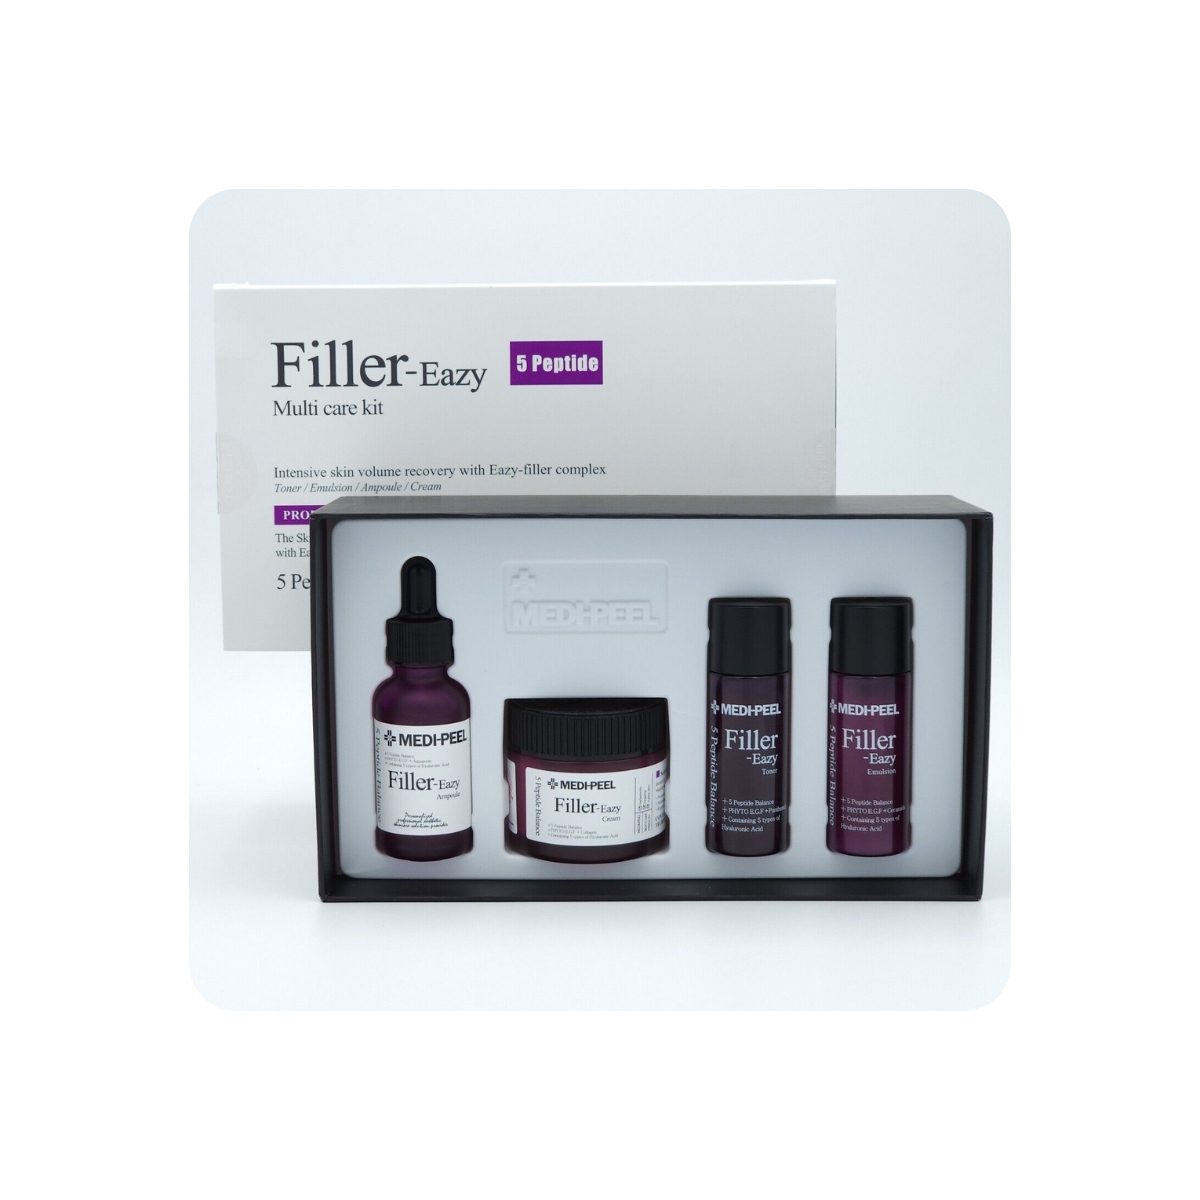 Emulsiones y Cremas al mejor precio: Rutina con Péptidos Medi-Peel Filler-Eazy 5 Peptide Multi Care Kit de Medi-peel en Skin Thinks - Tratamiento Anti-Manchas 